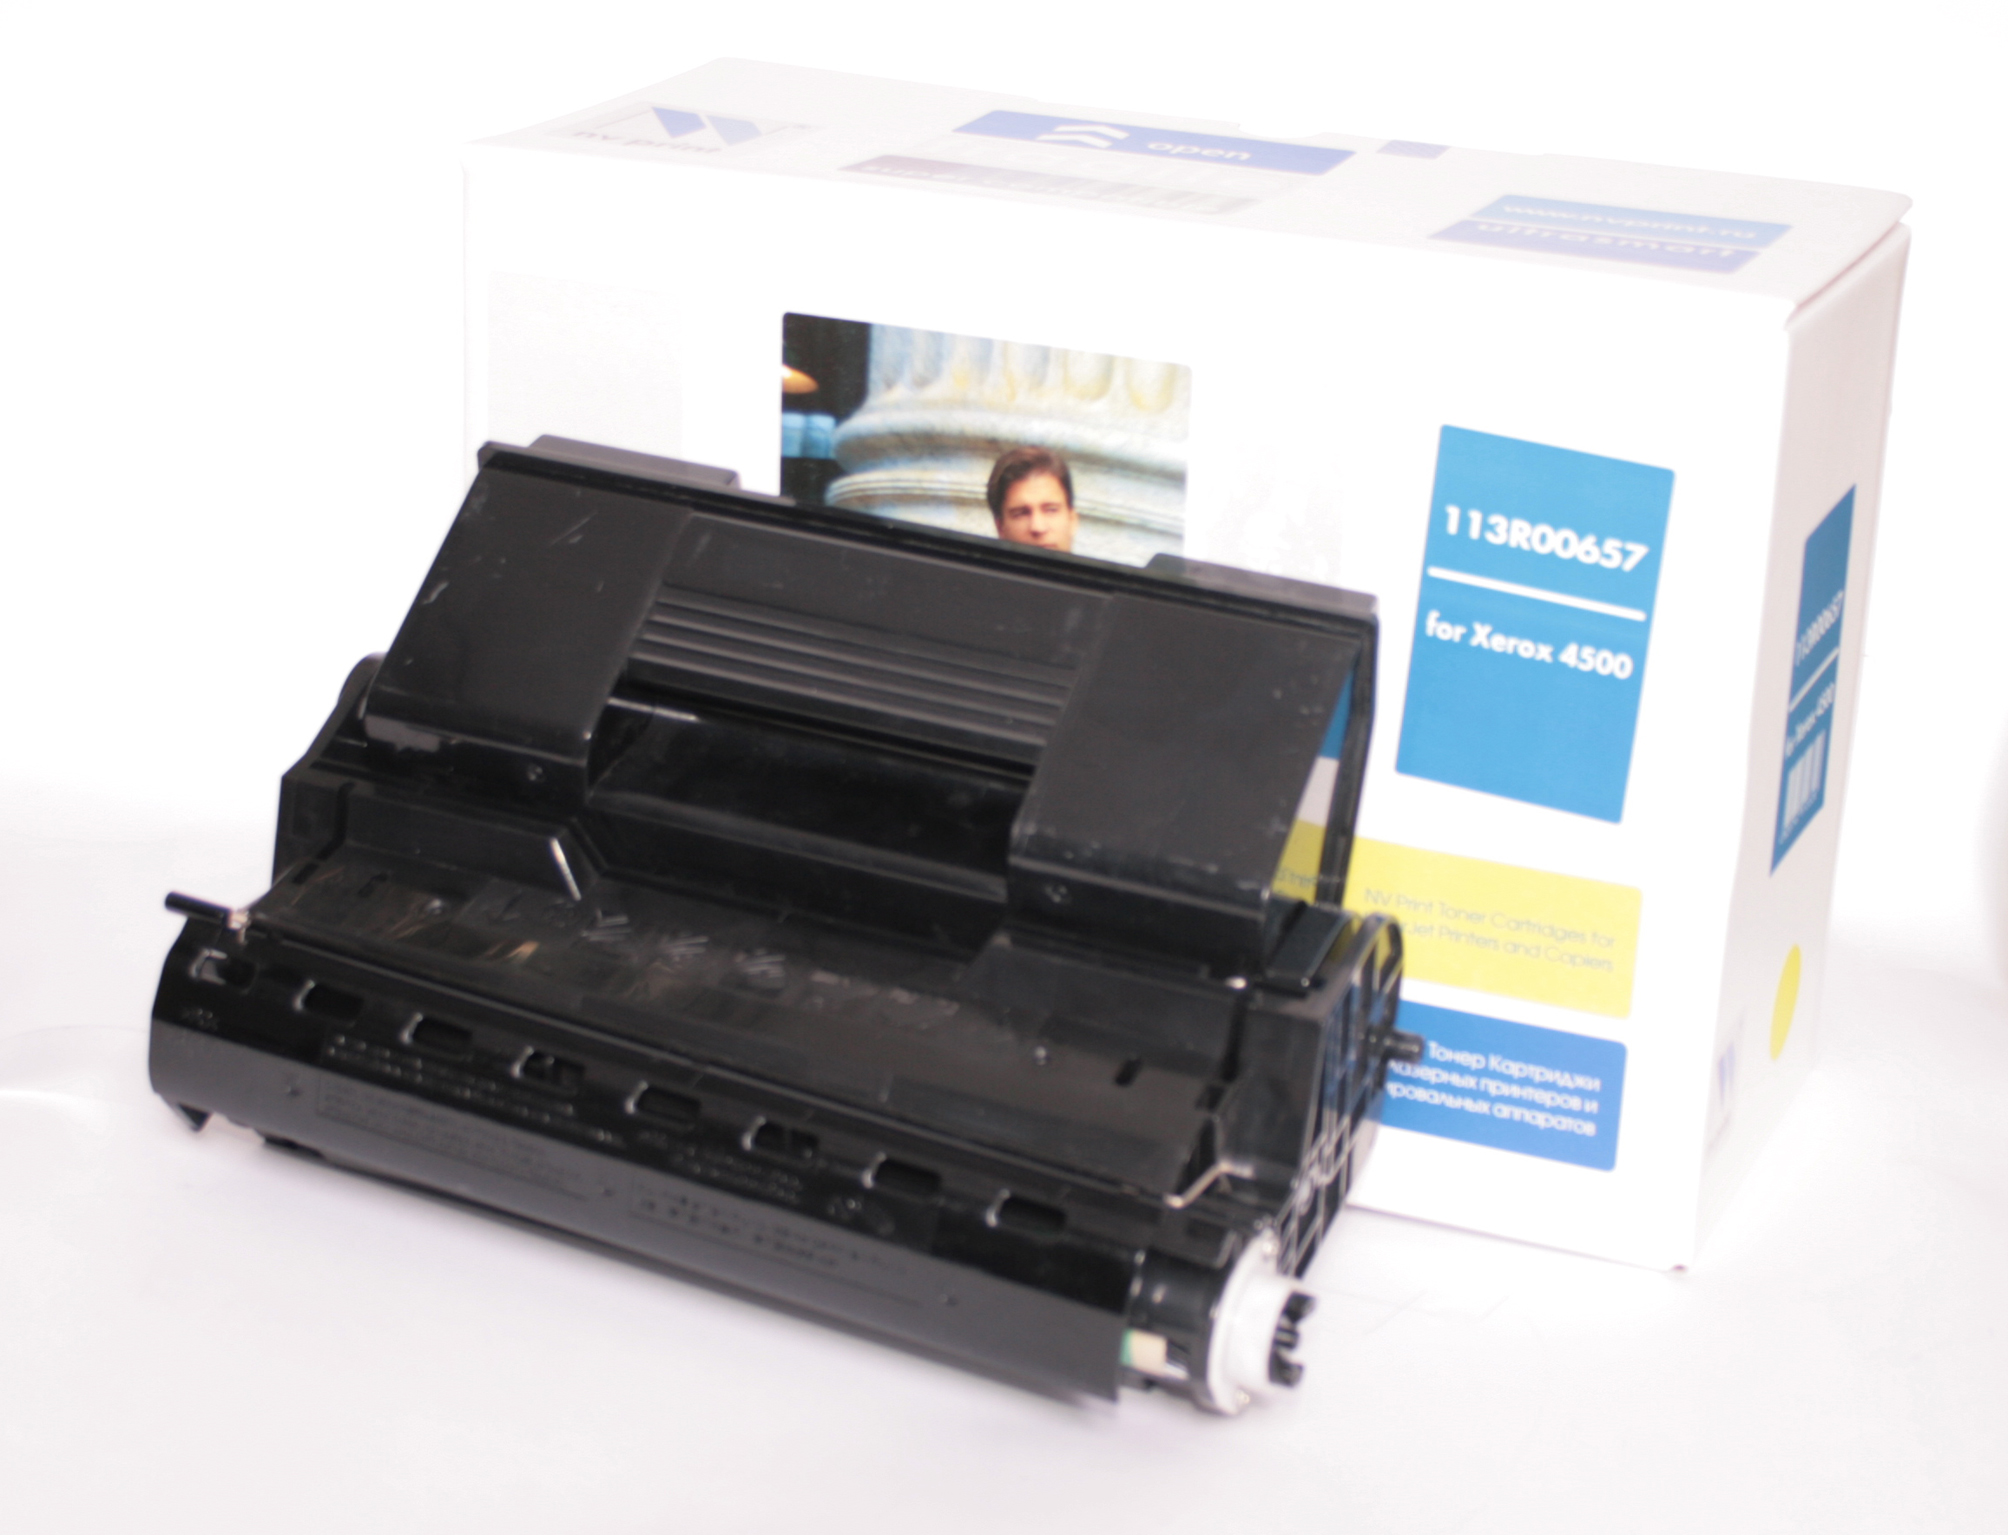 Картридж Xerox NV-Print (113R00657) для Phaser 4500 (18 000стр.)